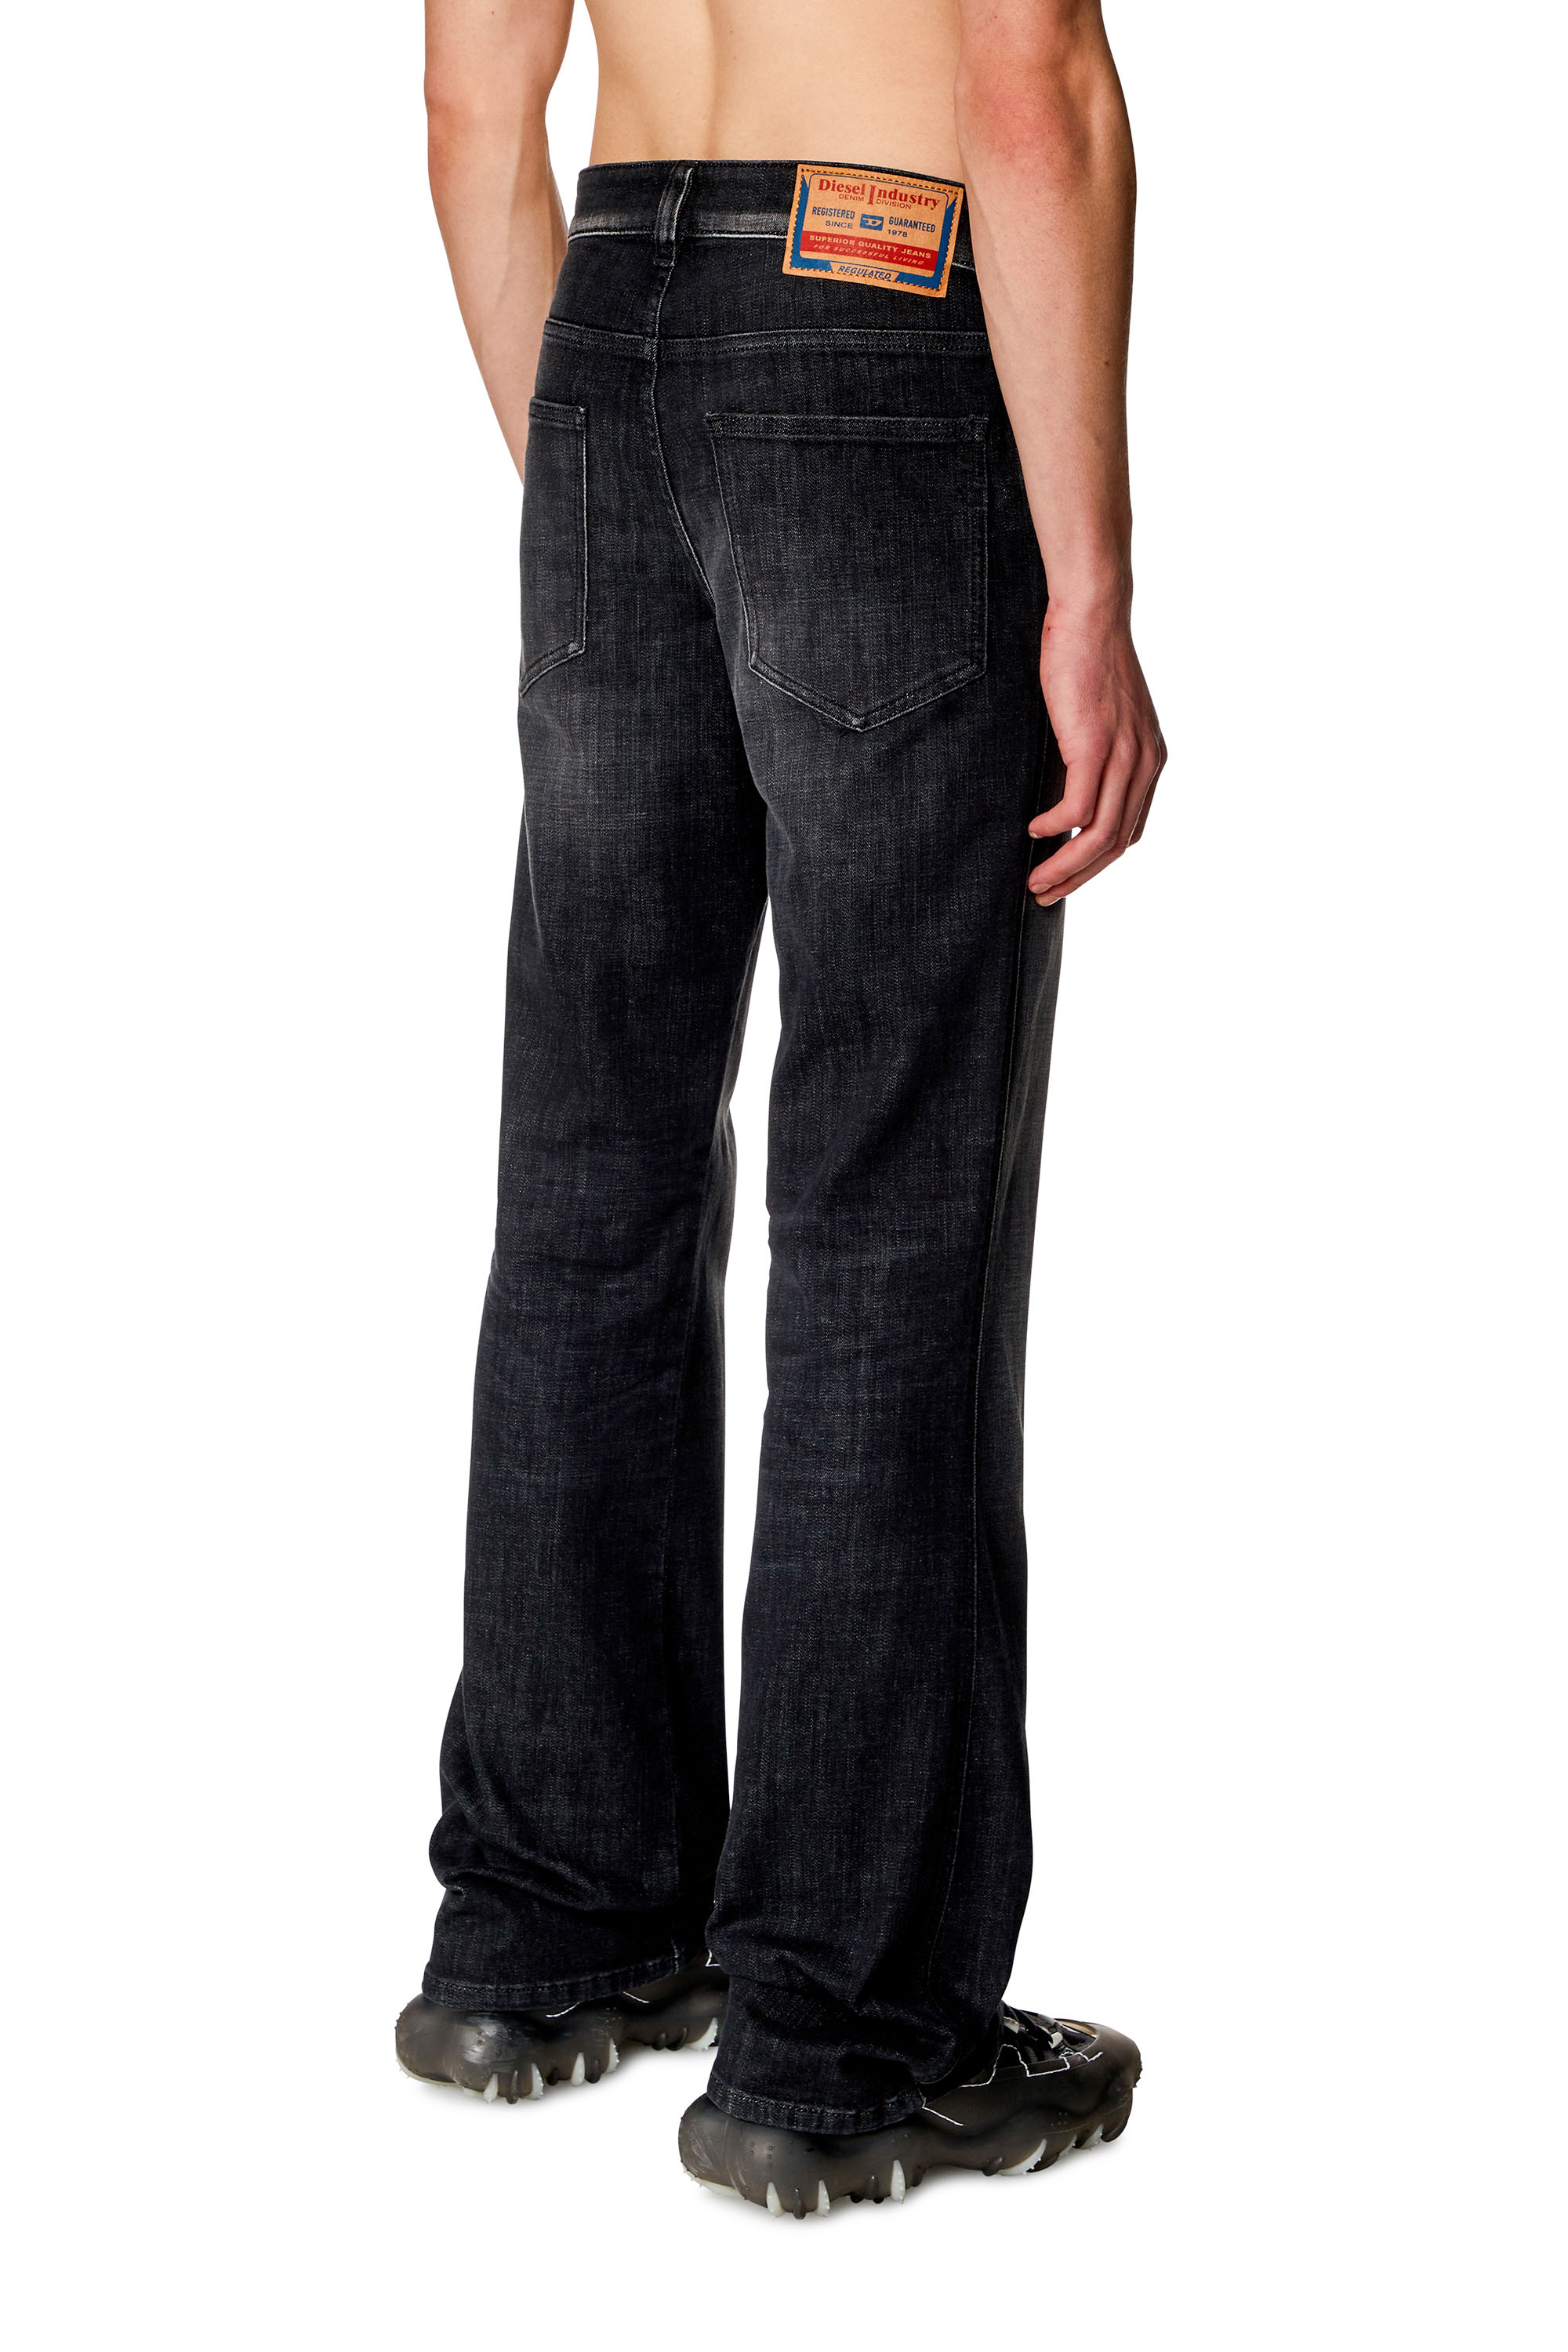 Herren Bootcut Jeans: Blau, Schwarz, Grau, D-Vocs | Diesel®